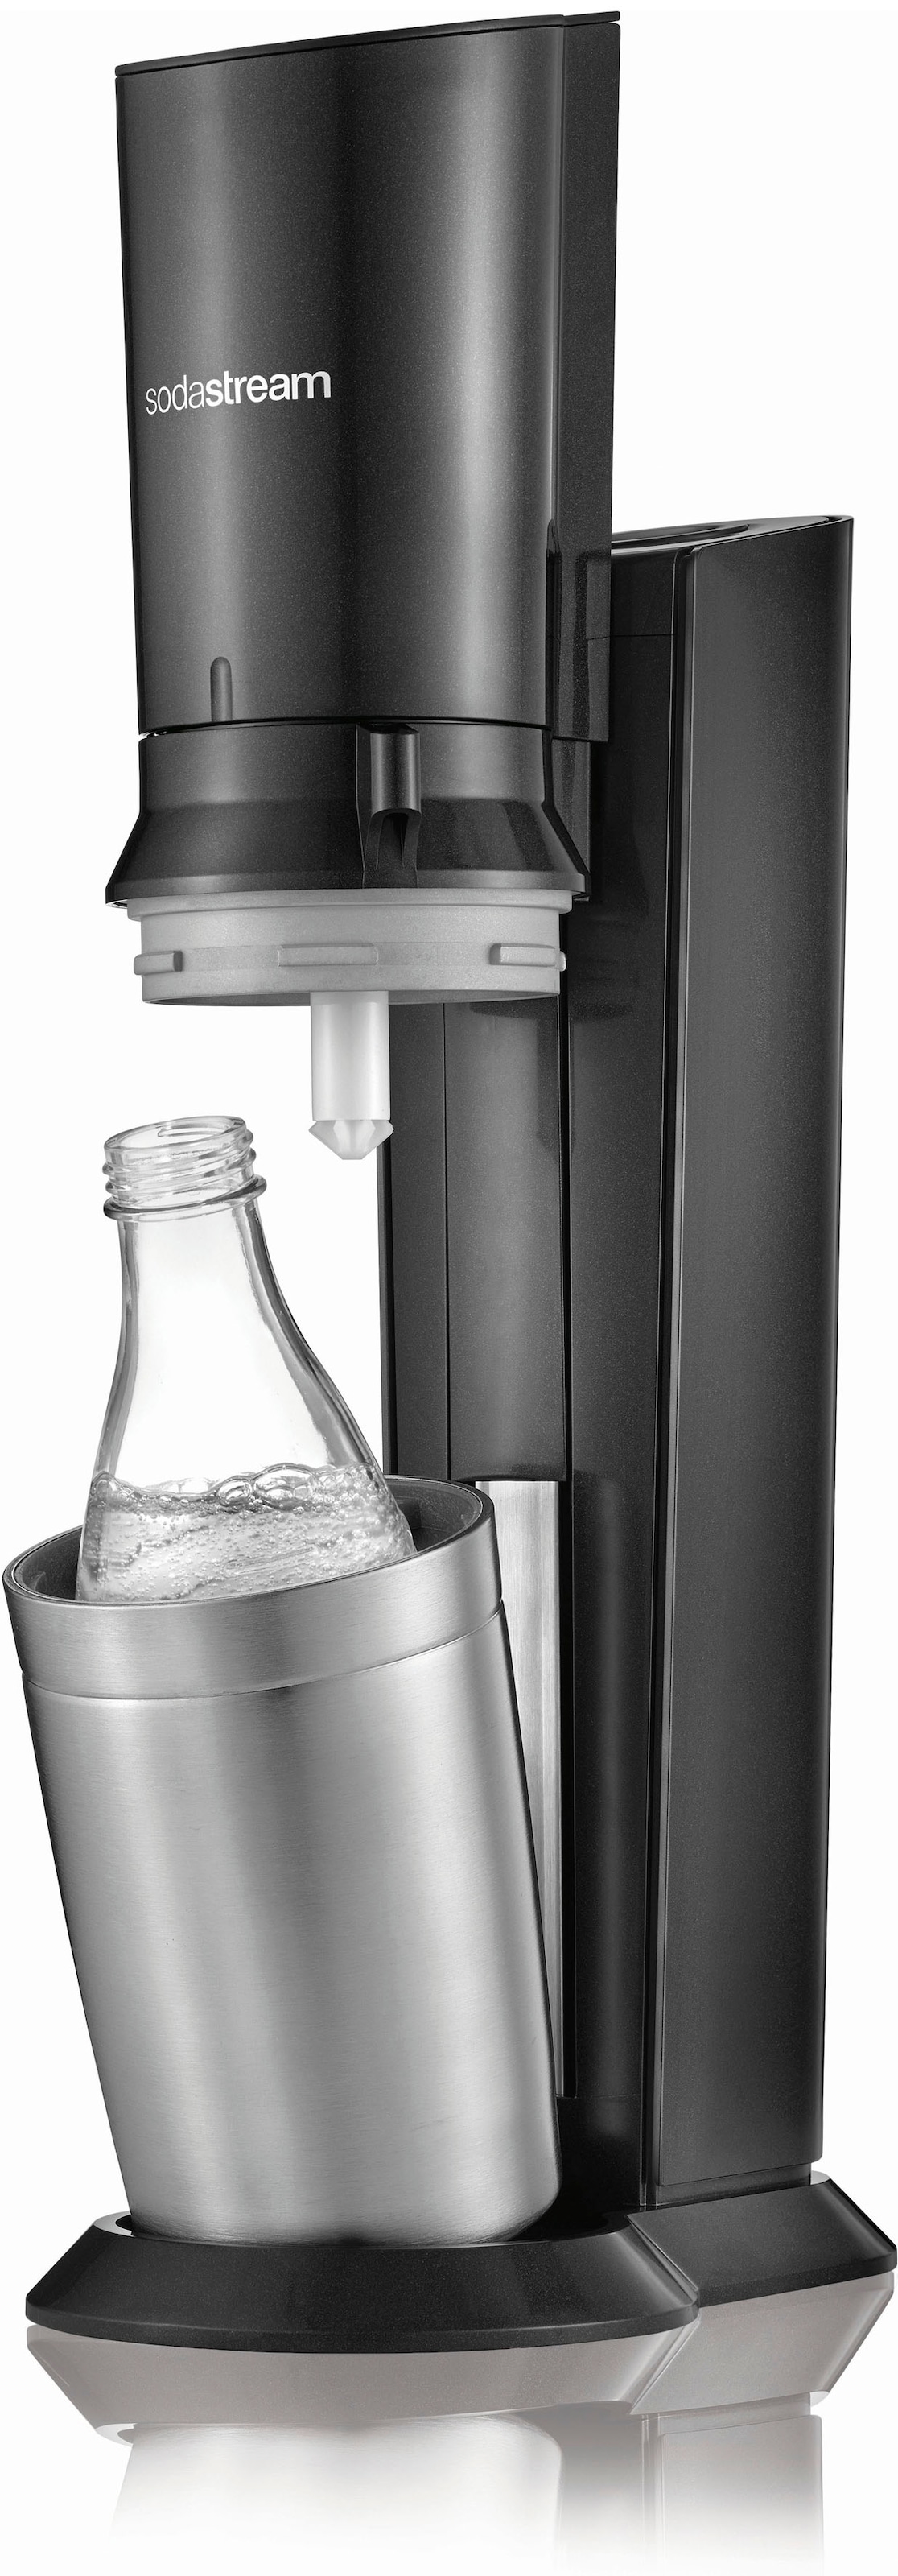 SodaStream Wassersprudler »Crystal 3.0-Bundle«, (Set, 5 tlg.), mit Quick Connect CO2-Zylinder und 3x Glaskaraffe 0,7 L